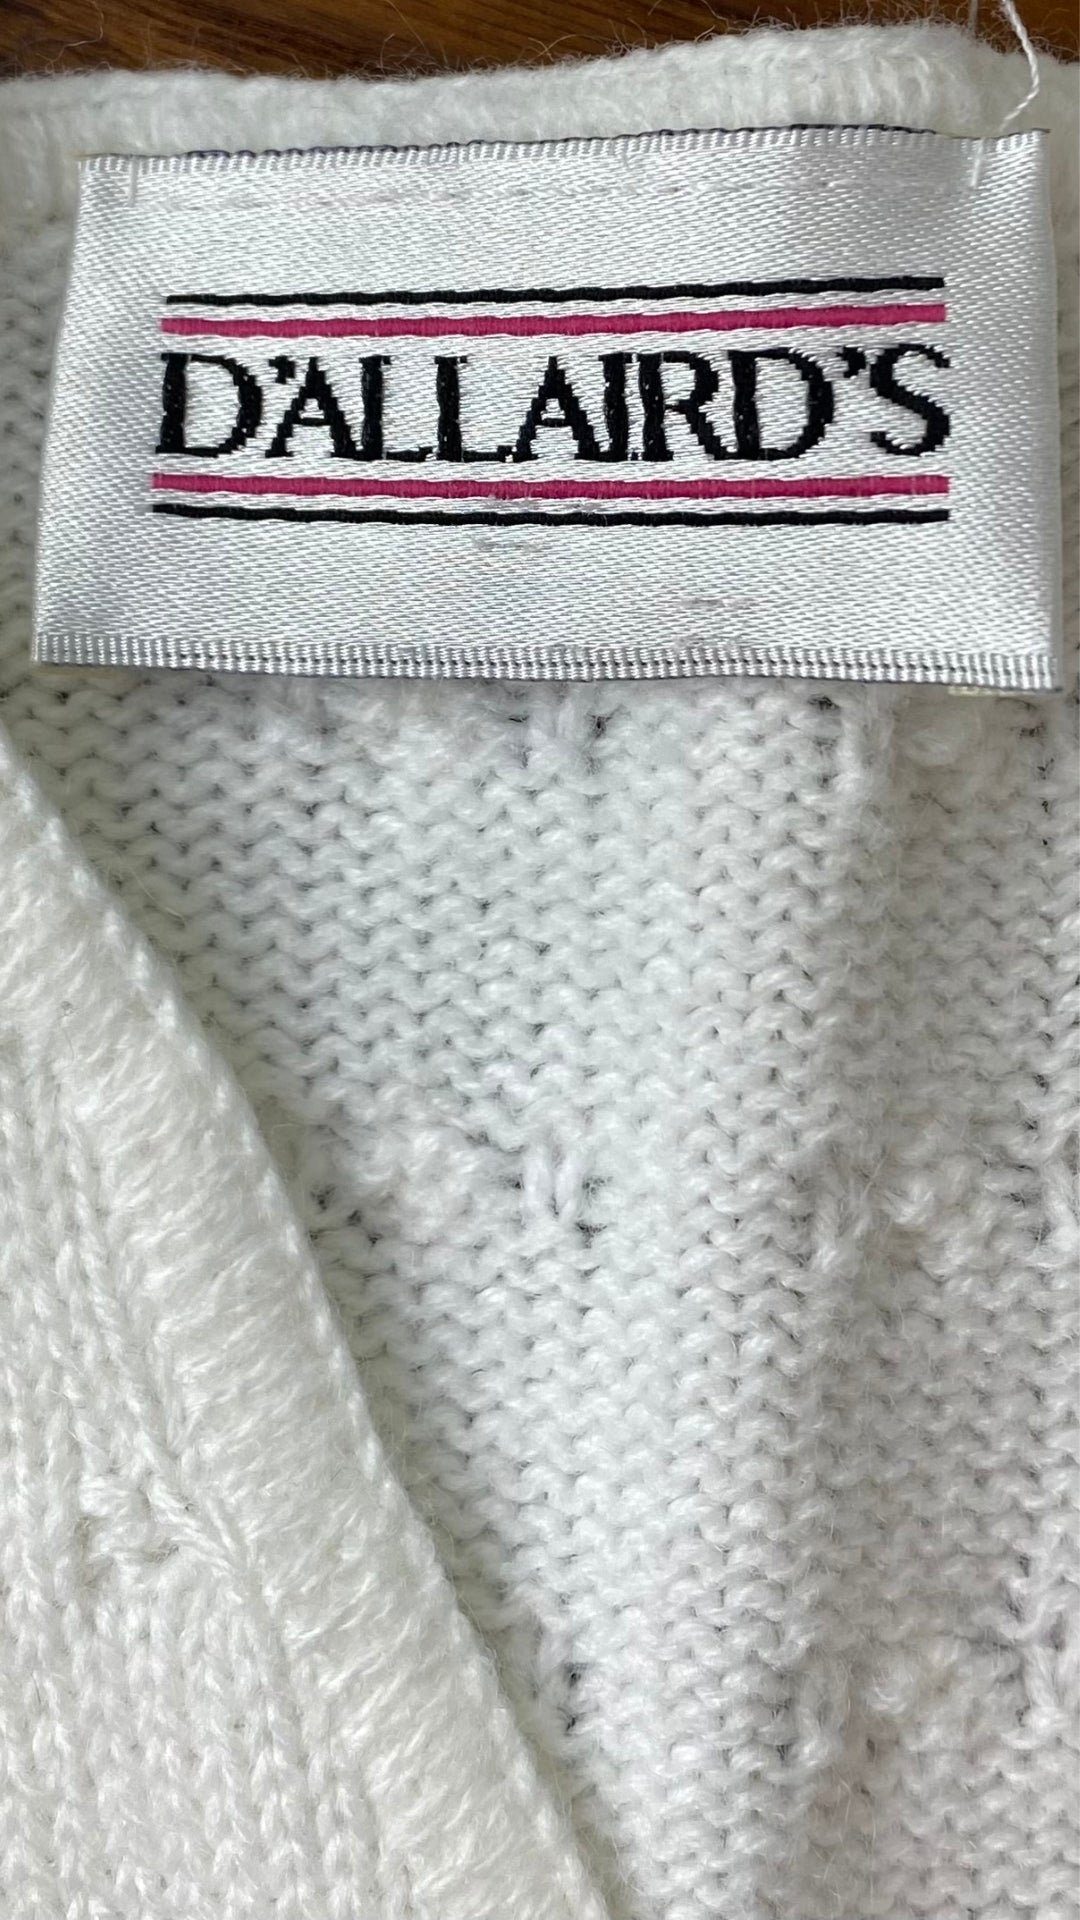 Gilet en tricot féminin crème vintage D'Aillairds, taille m/l. Vue de l'étiquette de marque.